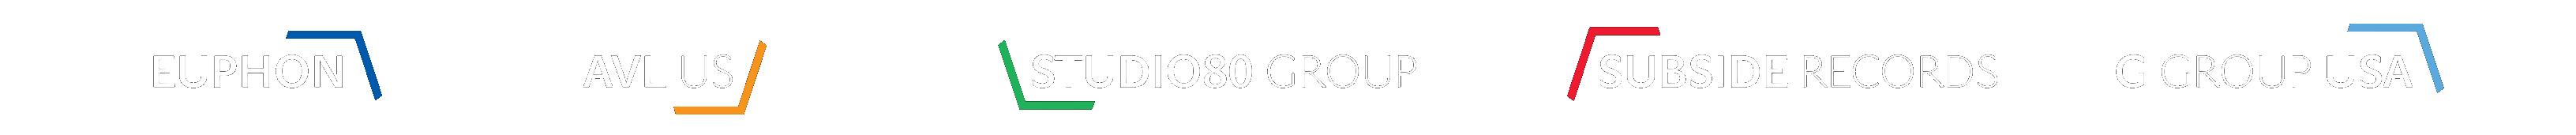 logo-ggroup